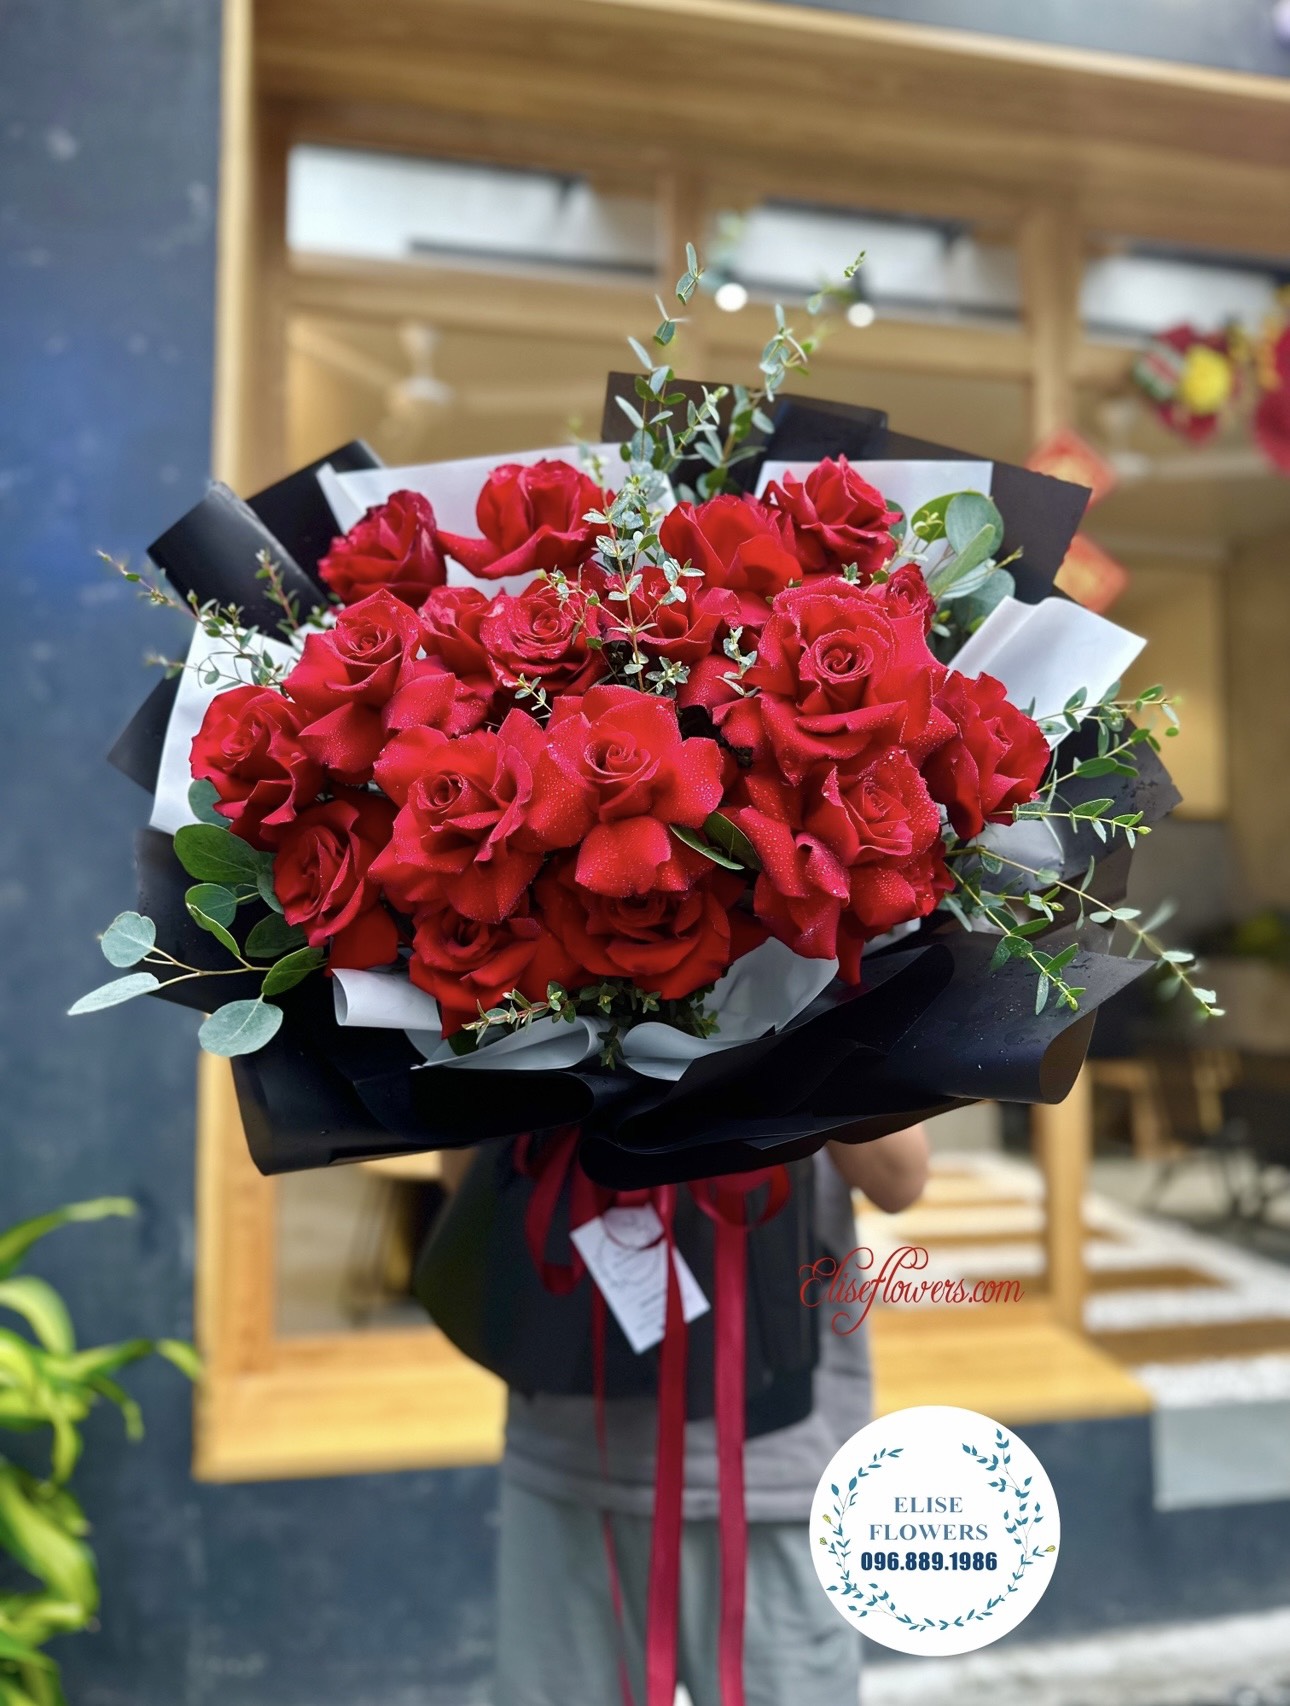 Đặt hoa 8/3 ở Hà Nội. Đặt bó hoa tặng vợ yêu ngày 8/3. Bó hoa tặng vợ yêu đẹp ngày 8/3 ở quận Cầu Giấy, Hà Nội.